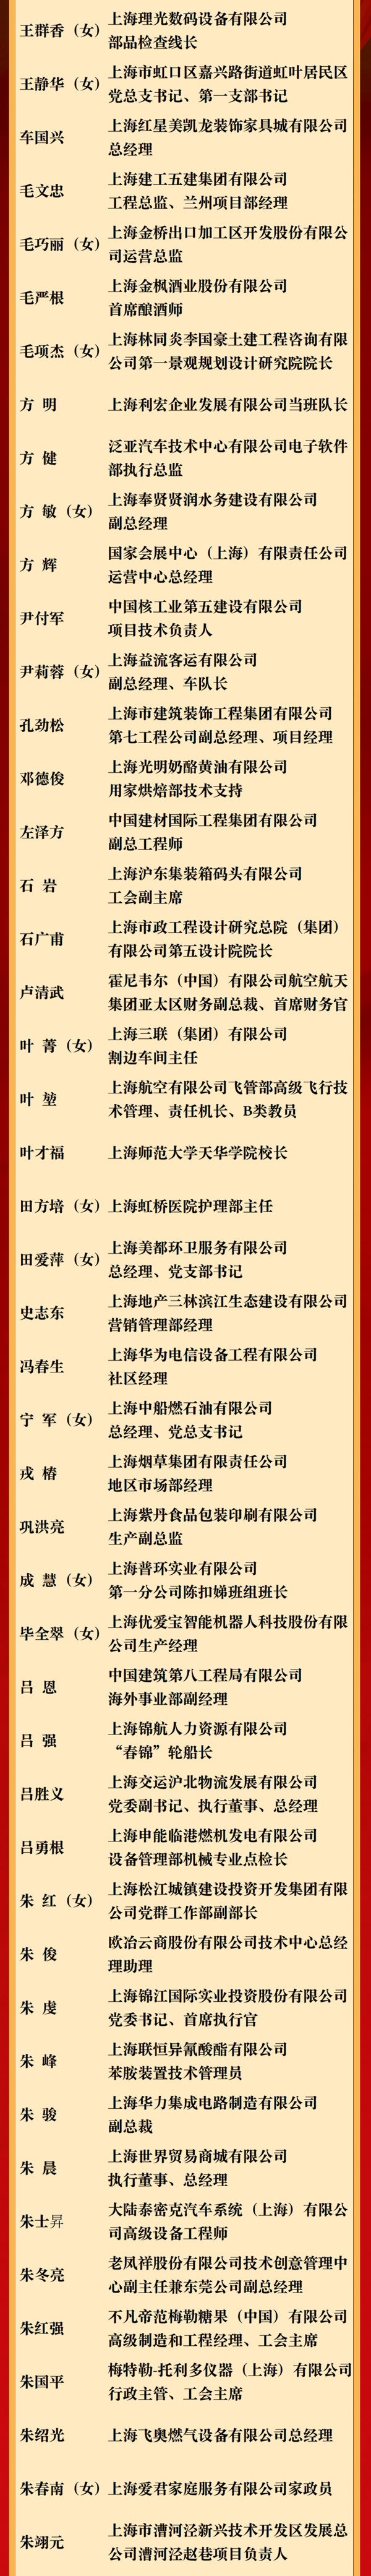 2020年上海市劳模(先进工作者),模范集体名单公布!有你熟悉的吗?